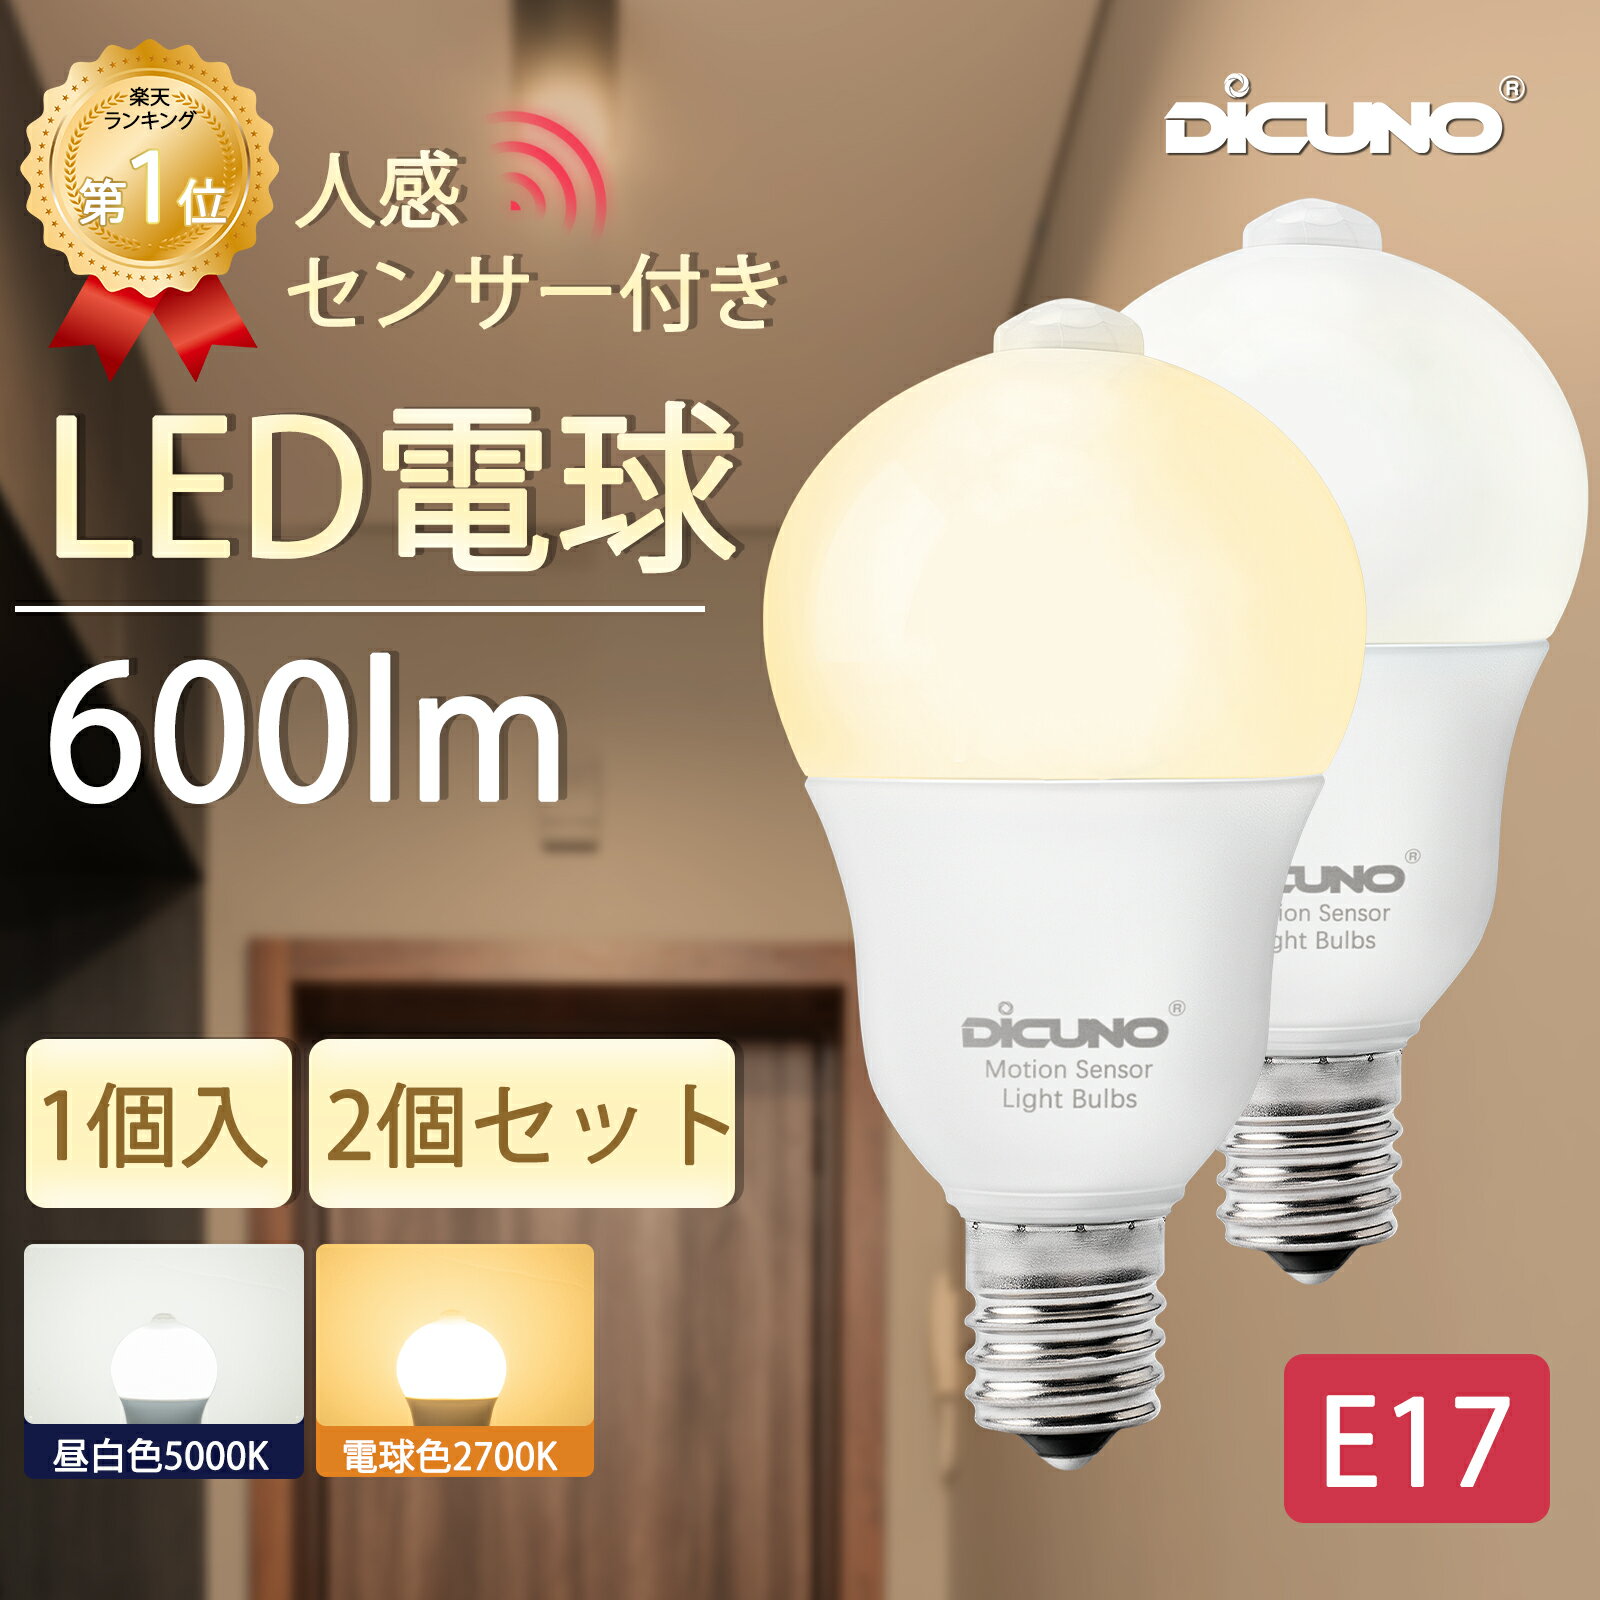 【人感センサー LED電球 E17】DiCUNO LED